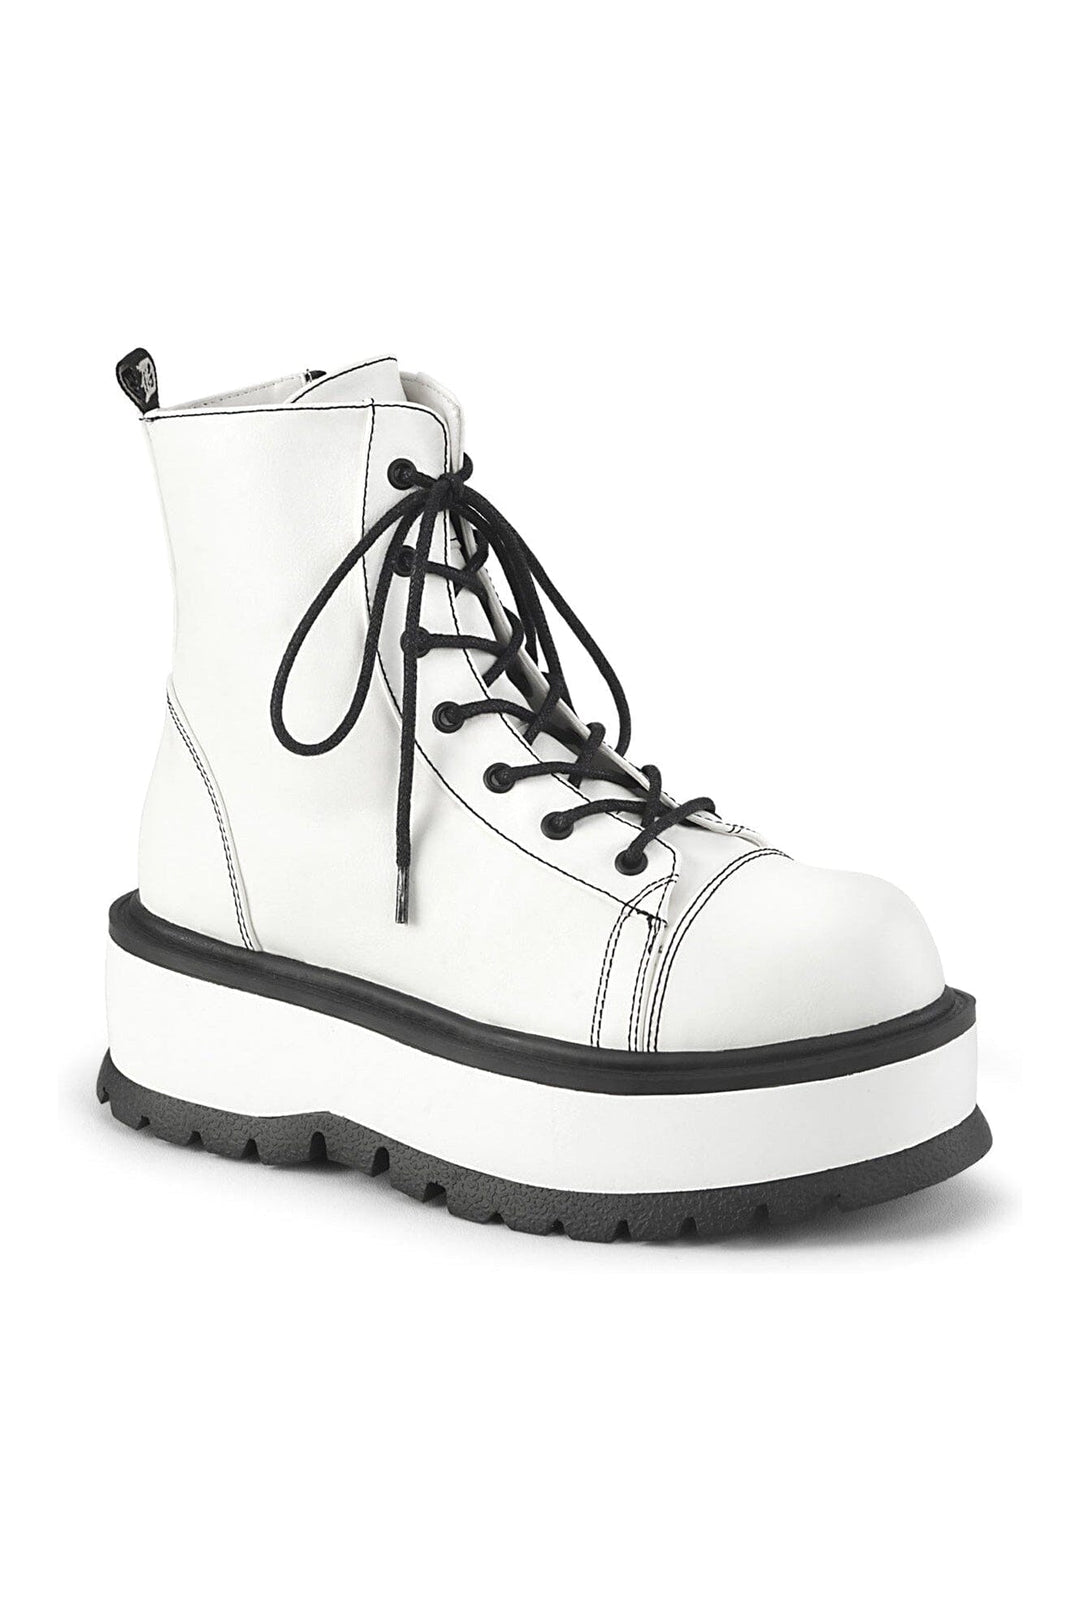 SLACKER-55 White Vegan Leather Ankle Boot-Ankle Boots-Demonia-White-10-Vegan Leather-SEXYSHOES.COM